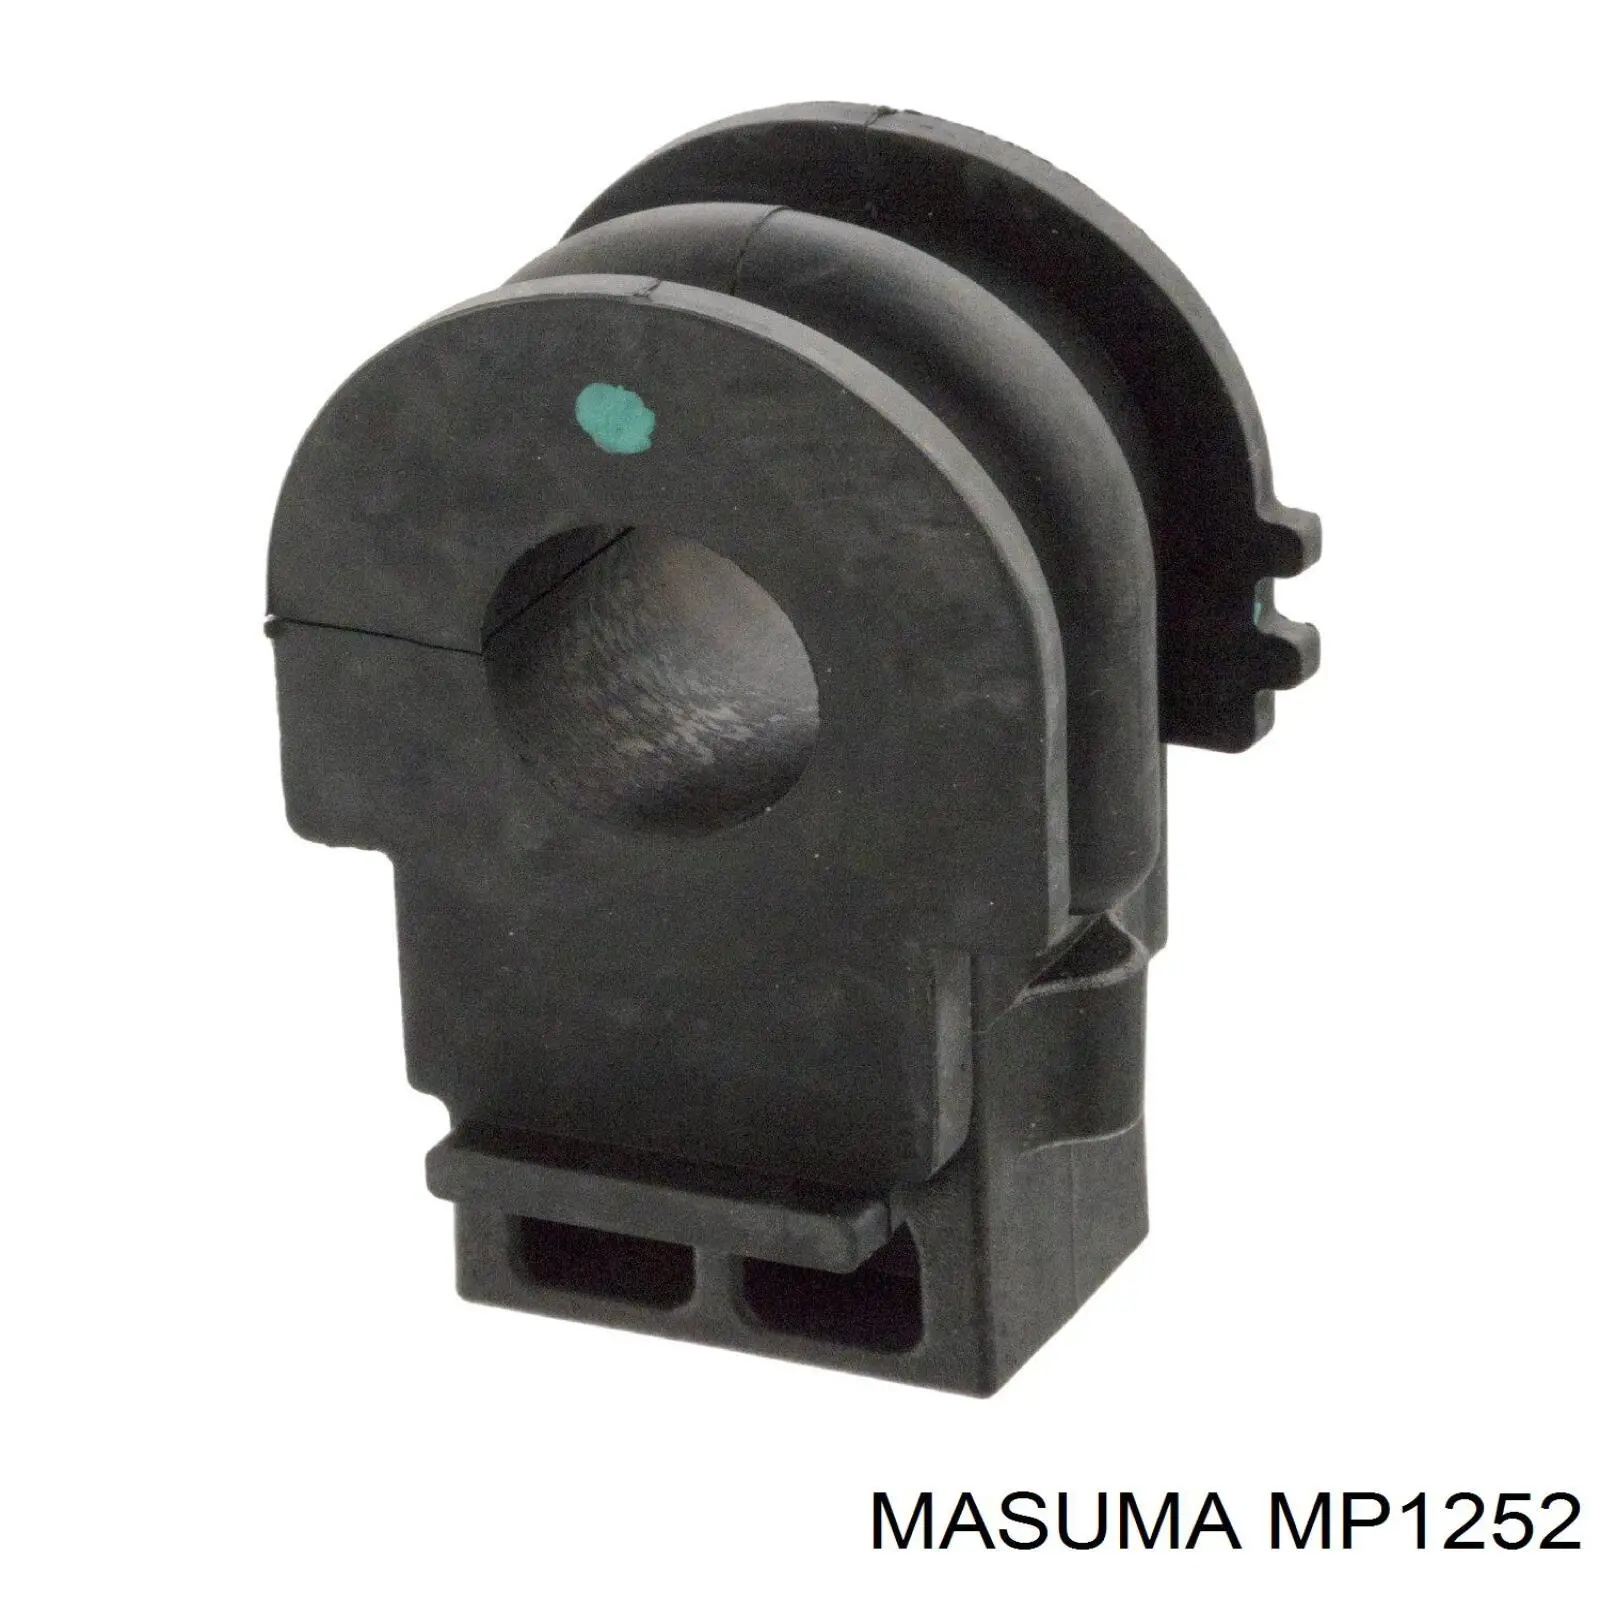 MP1252 Masuma casquillo de barra estabilizadora delantera